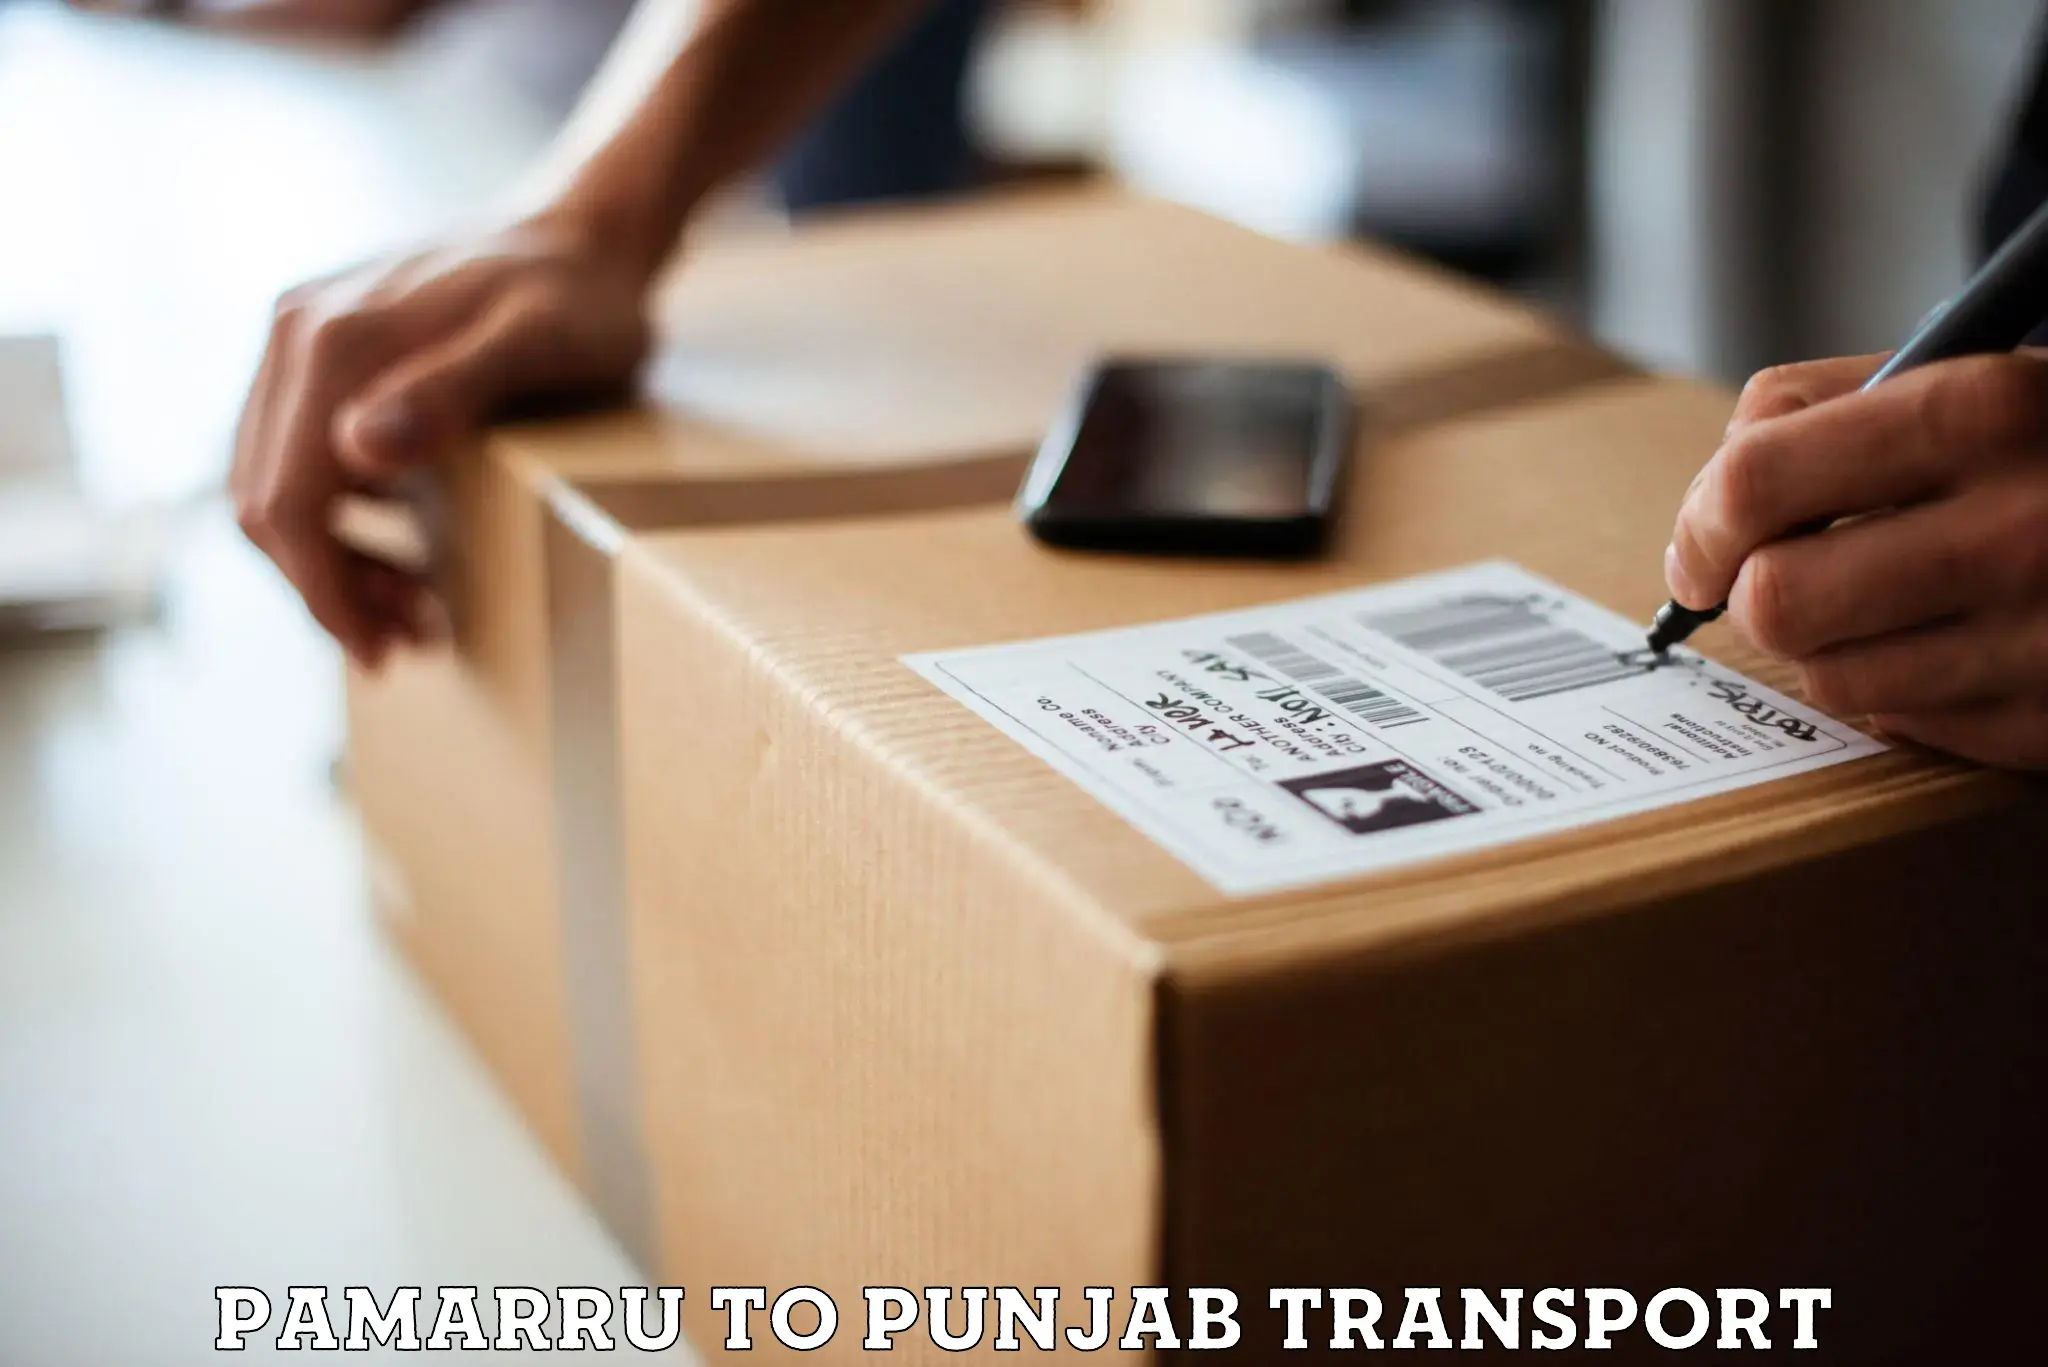 Shipping partner Pamarru to Punjab